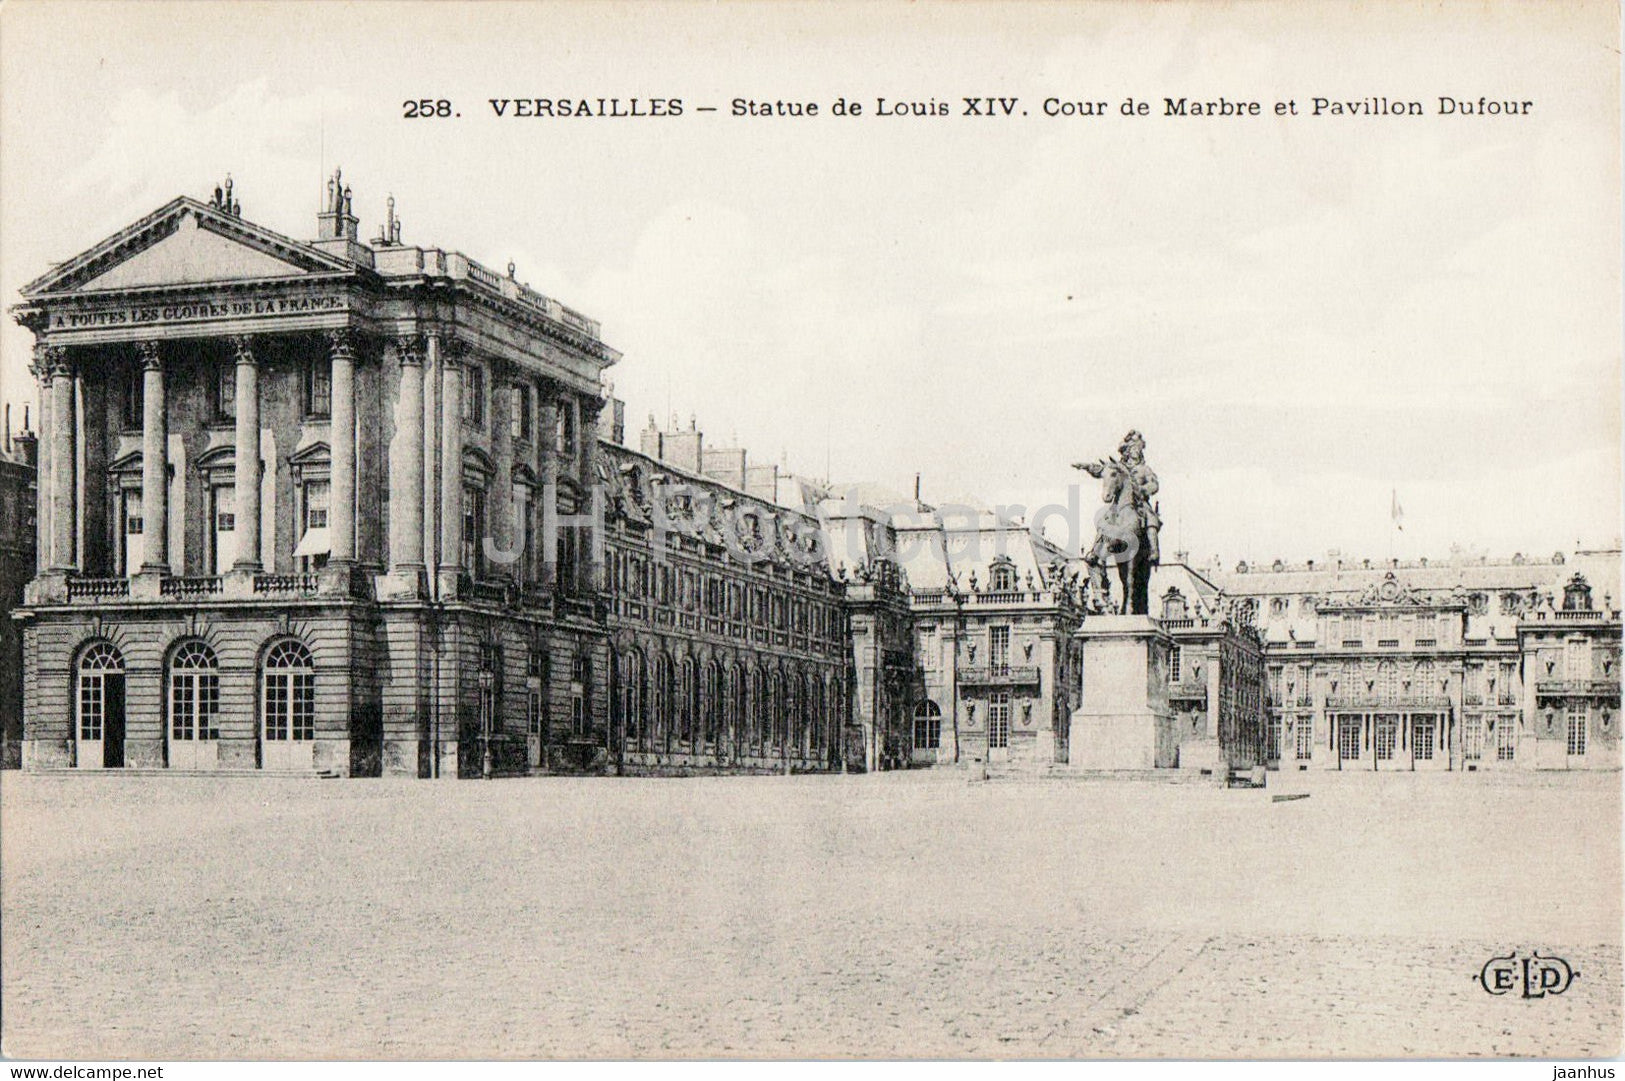 Versailles - Statue de Louis XIV - Cour de Marbre et Pavillon Dufour - monument - 258 - old postcard - France - unused - JH Postcards